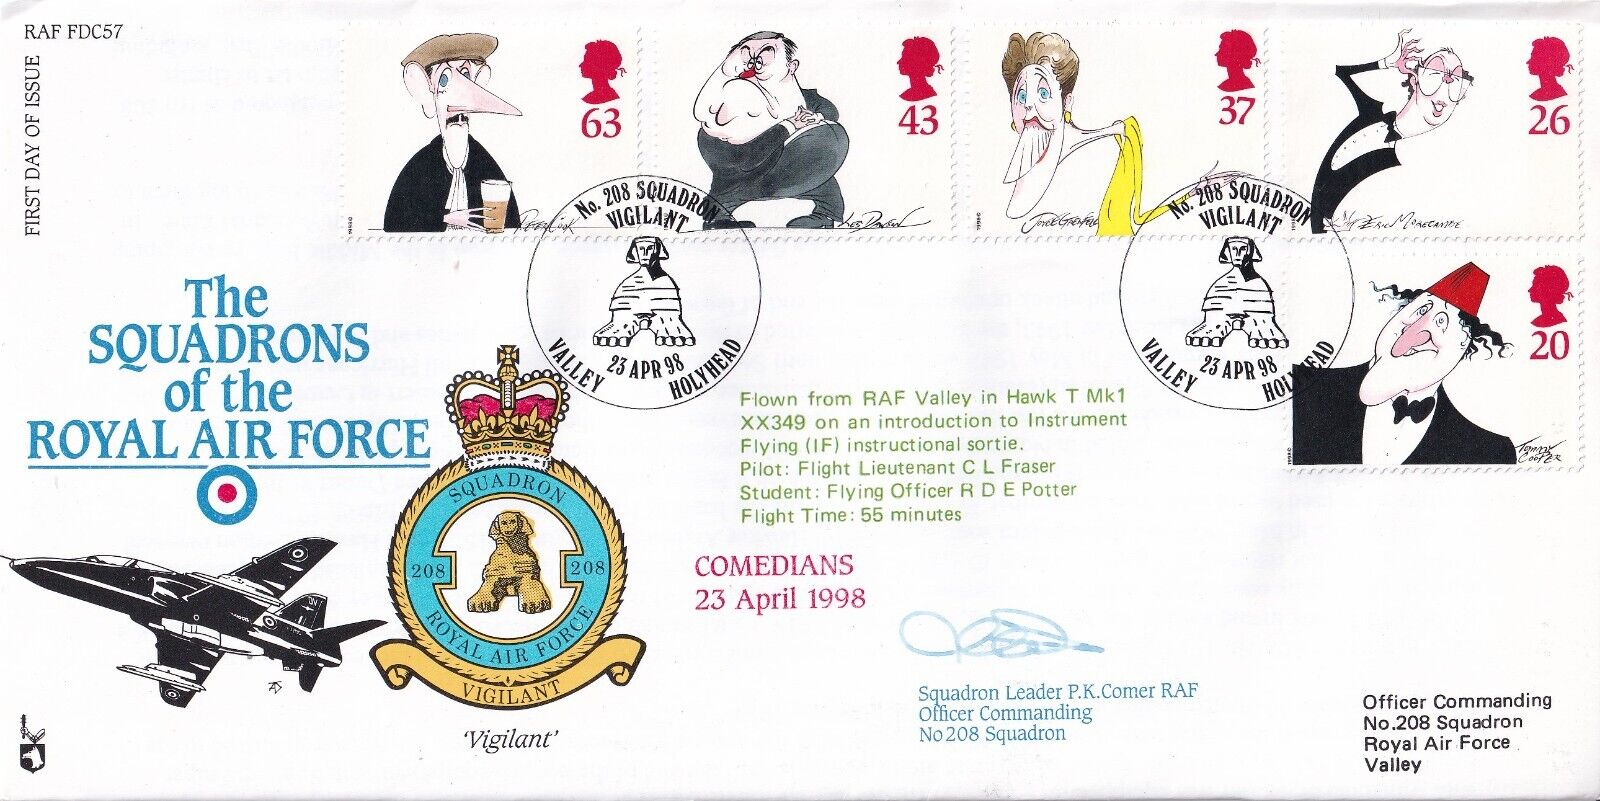 RAF FDC57 Set of Comedians Stamps Flown in Hawk  Signed Sqn Ldr P K Comer